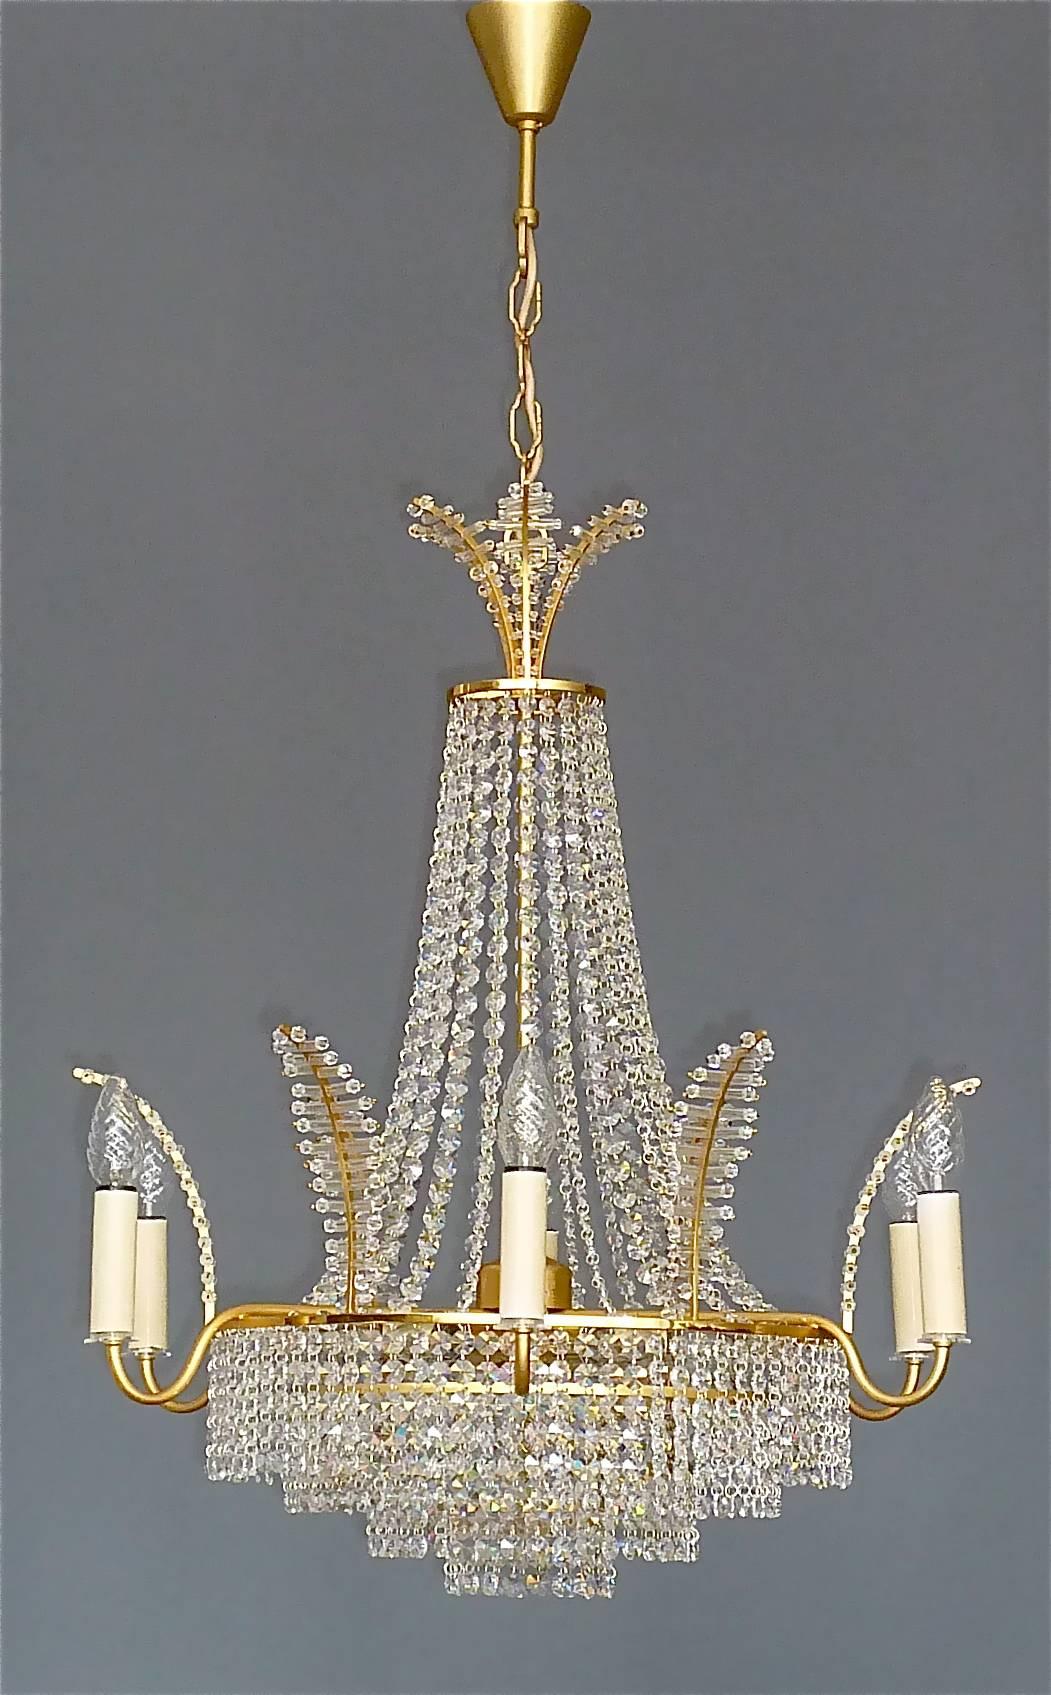 Beau grand lustre en laiton doré et verre de cristal fabriqué par la société d'éclairage haut de gamme Palwa, Allemagne, vers 1960. Ce lustre classique, qui peut être suspendu par une chaîne et dont la longueur est réglable, comporte quatre étages